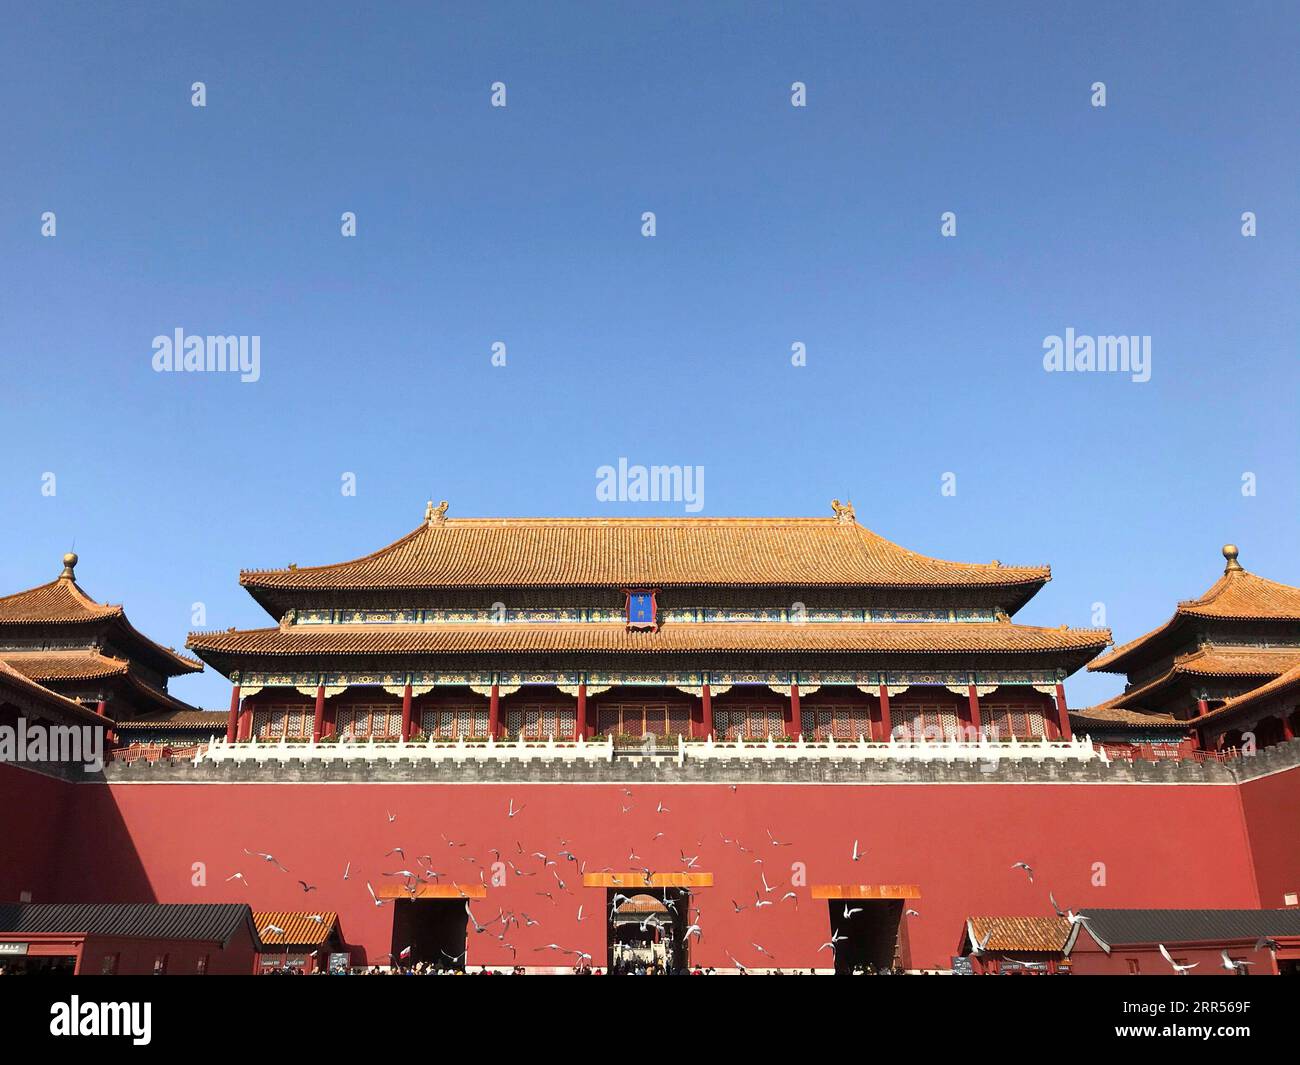 201224 -- PECHINO, 24 dicembre 2020 -- la foto scattata con un telefono cellulare mostra una vista nel Museo del Palazzo di Pechino, capitale della Cina, 10 novembre 2019. L'anno 2020 segna il 600° anniversario della città Proibita. Costruita tra il 1406 e il 1420, la città Proibita misura 961 metri da nord a sud e 753 metri da est a ovest, coprendo un'area di circa 720.000 metri quadrati. Caratterizzato da pareti rosse e tegole con vetri gialli, rappresenta il culmine della tradizionale architettura sontuosa cinese, influenzando gli sviluppi culturali e architettonici nell'Asia orientale e nelle aree circostanti. Foto Stock